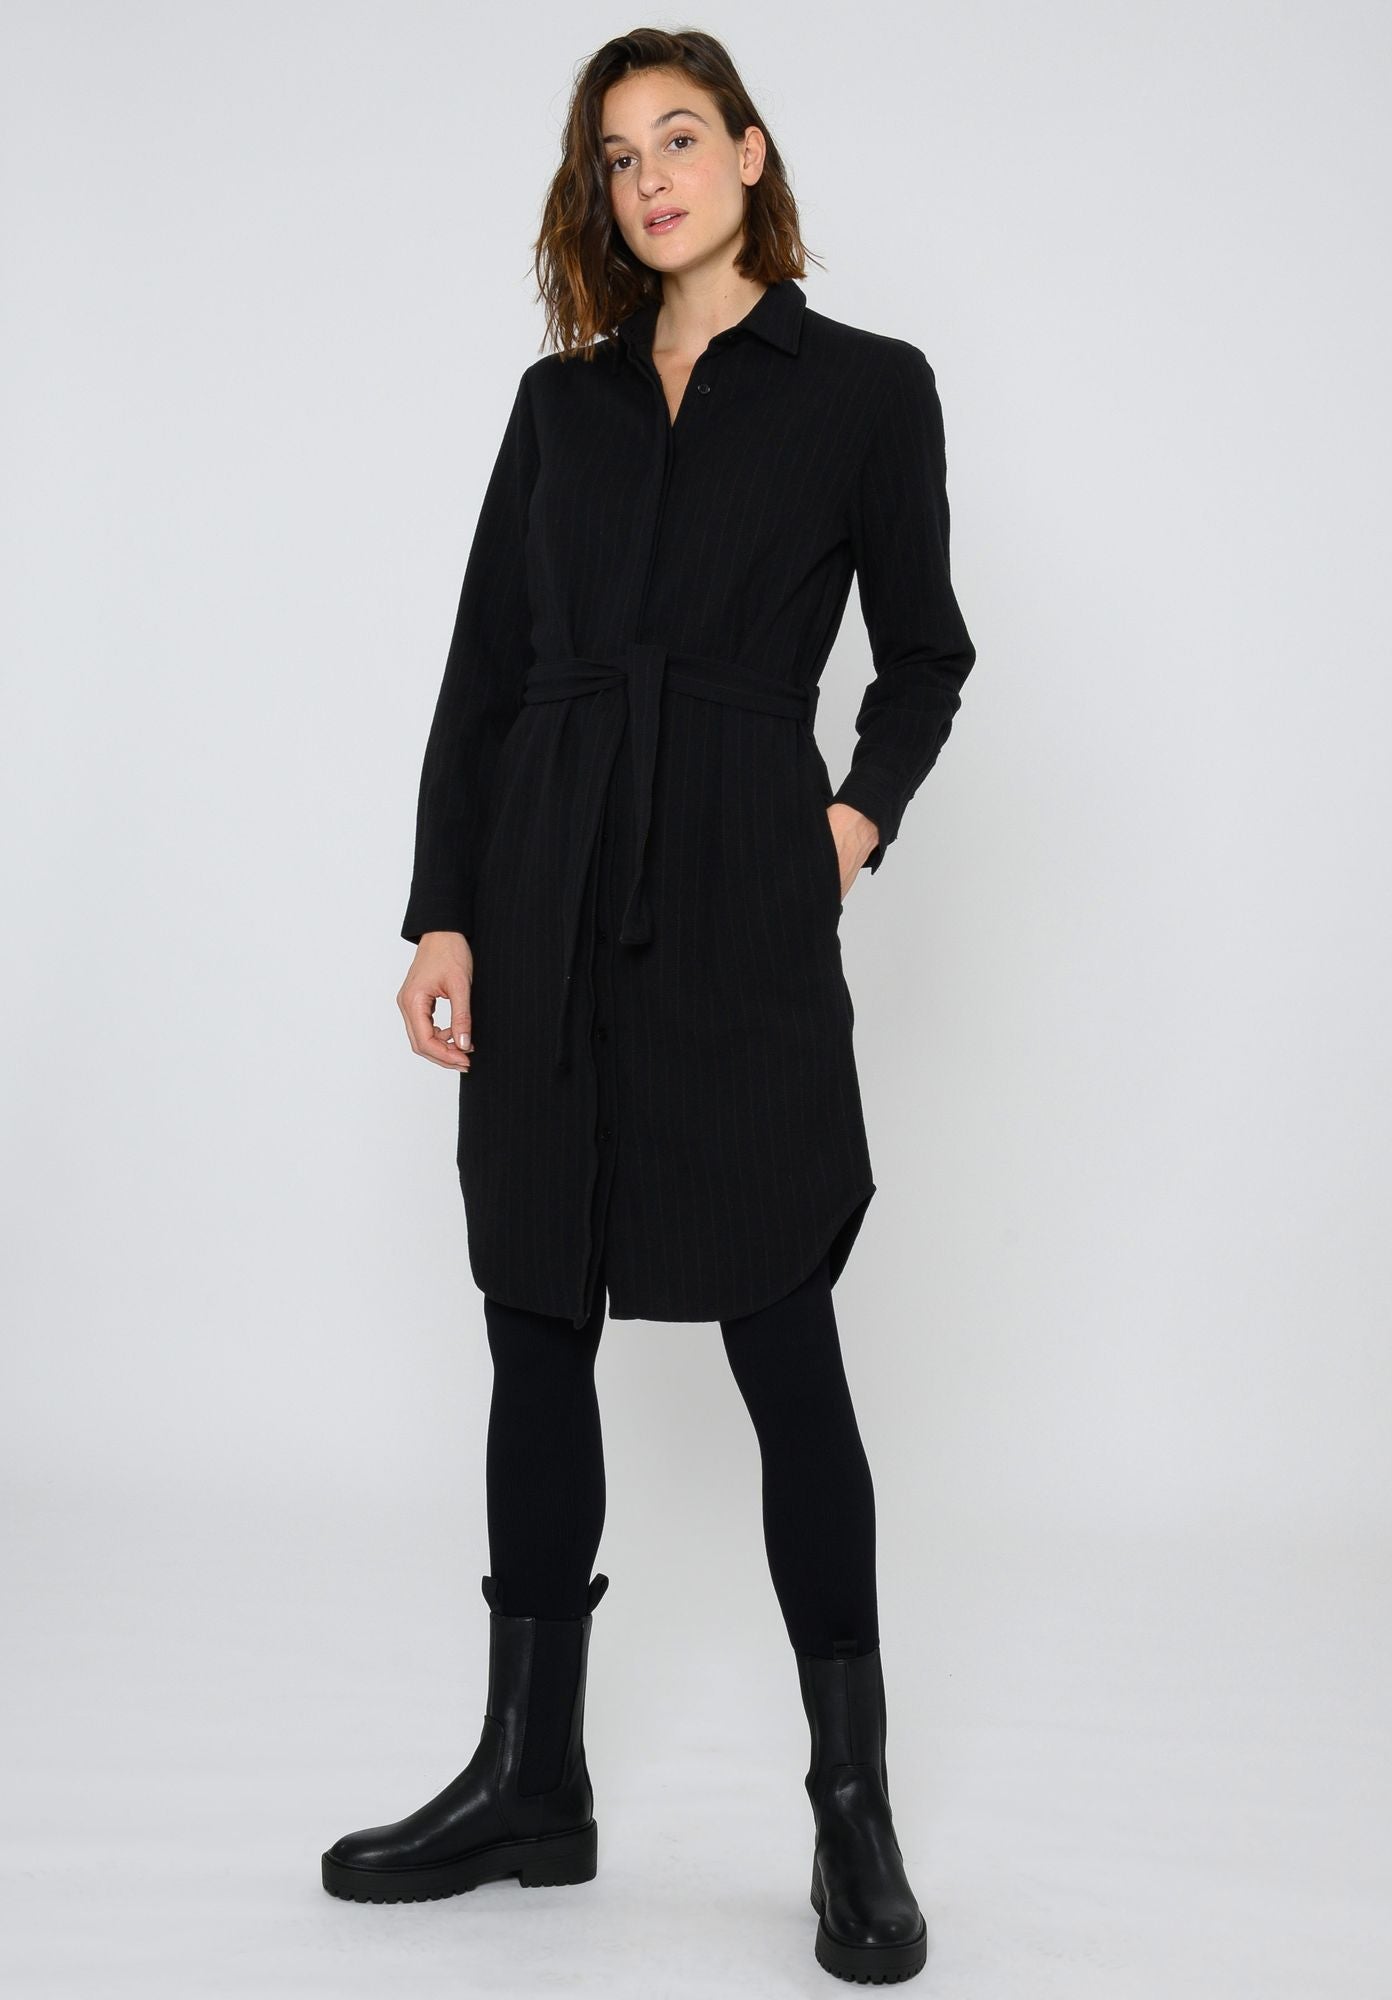 Schwarzes Kleid TT83 aus Bio-Baumwolle von Thokkthokk